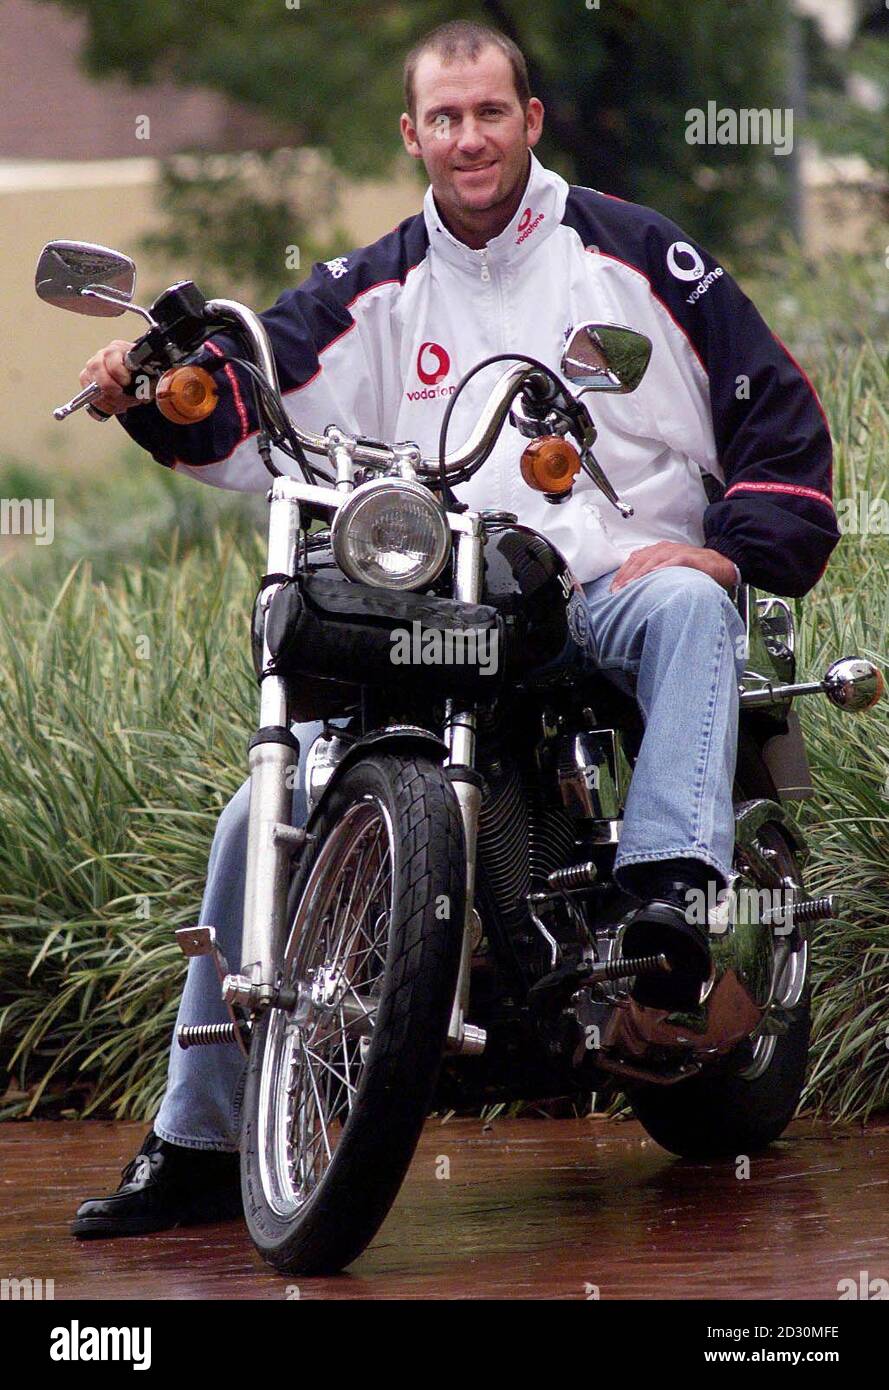 England Cricketer und Motorrad-Fan Craig White fährt eine 1340cc Softail  Custom Harley Davidson 1998, im Wert von 145,000 Rand (ca. 14,000), in  Johannesburg. * White ist ein Mitglied der eintägigen Mannschaft, die